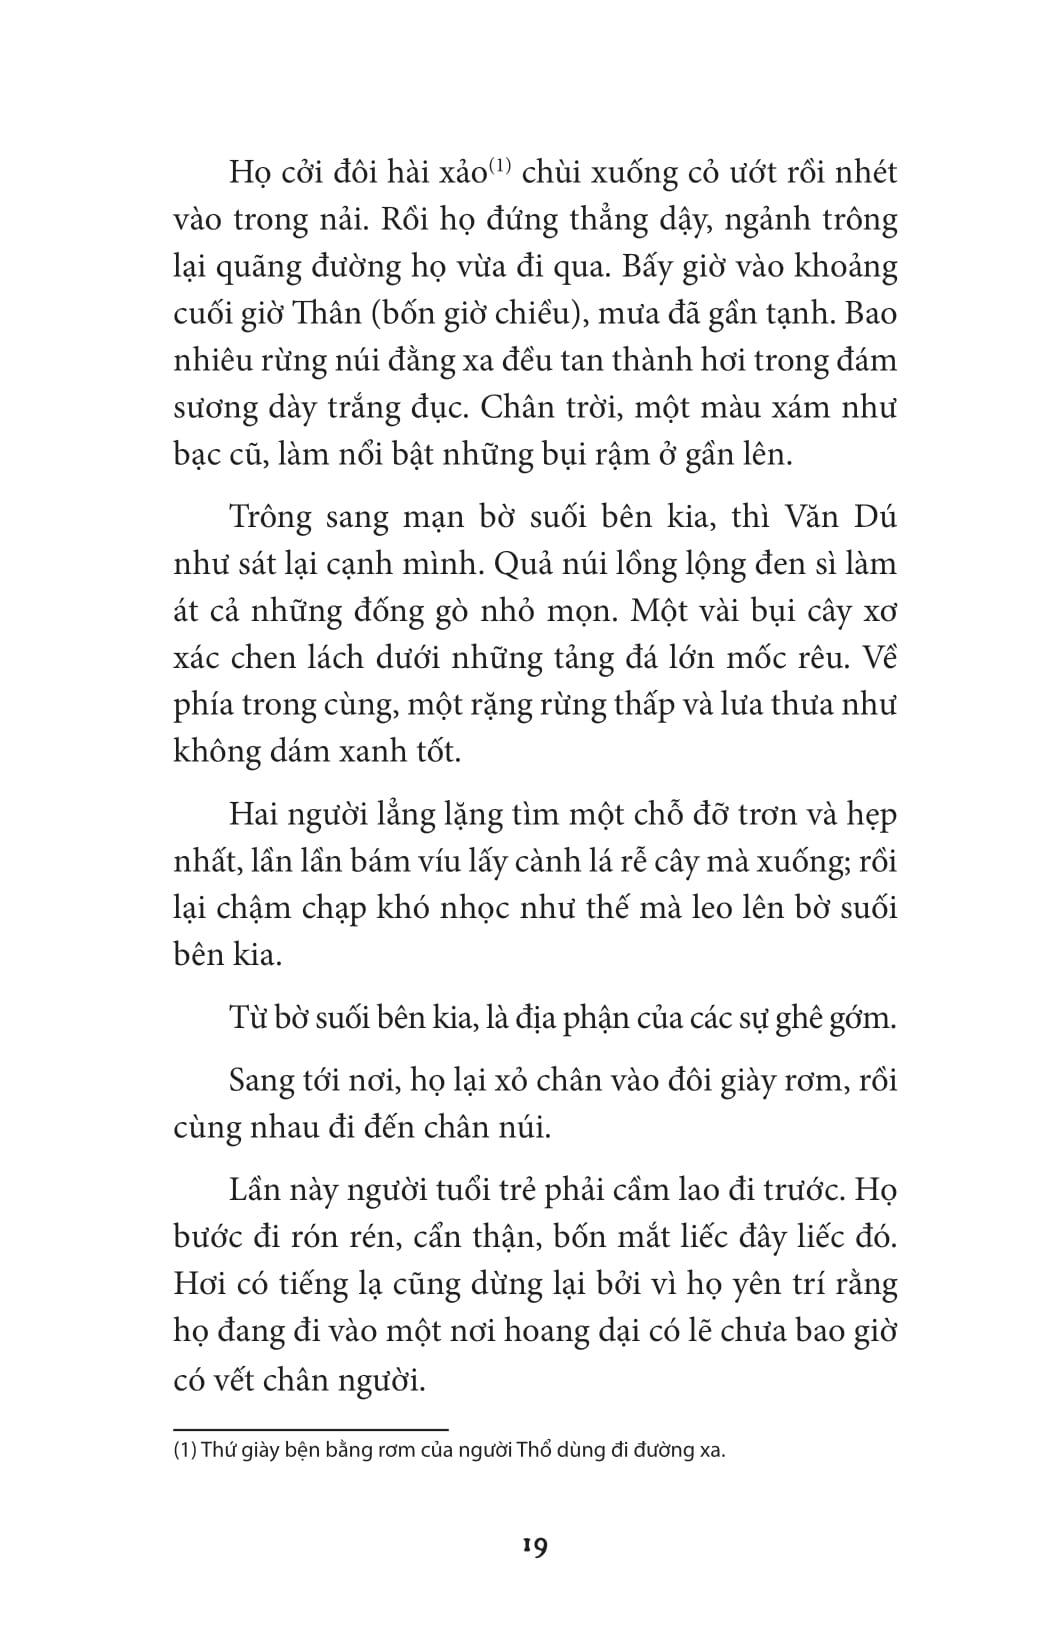 Tryện Kinh Dị Việt Nam - Vàng Và Máu